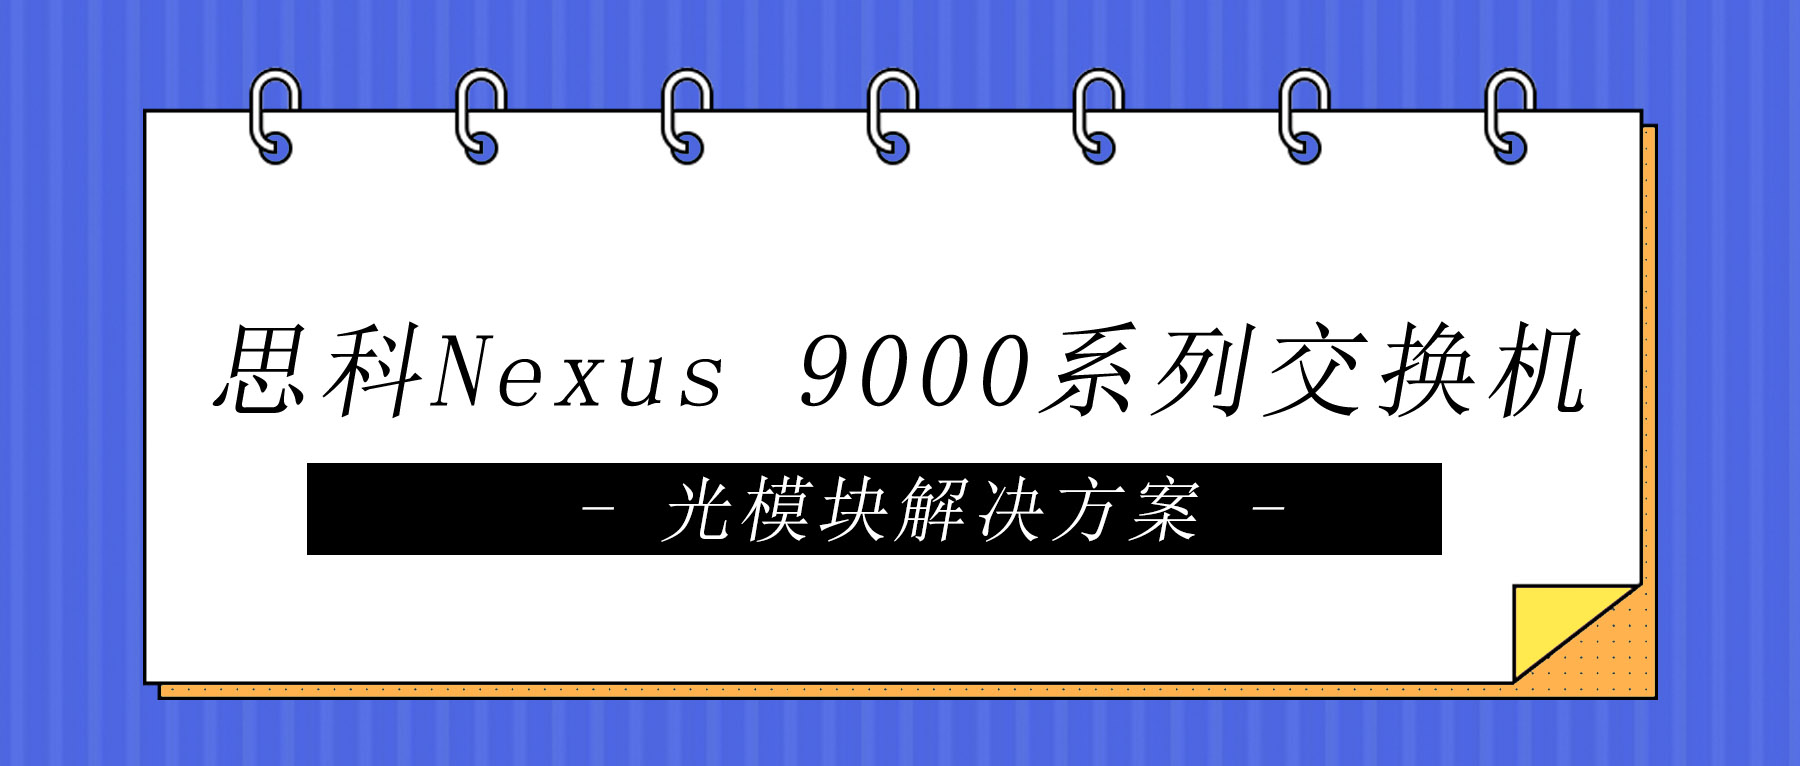 思科Nexus 9000系列交换机光模块解决方案